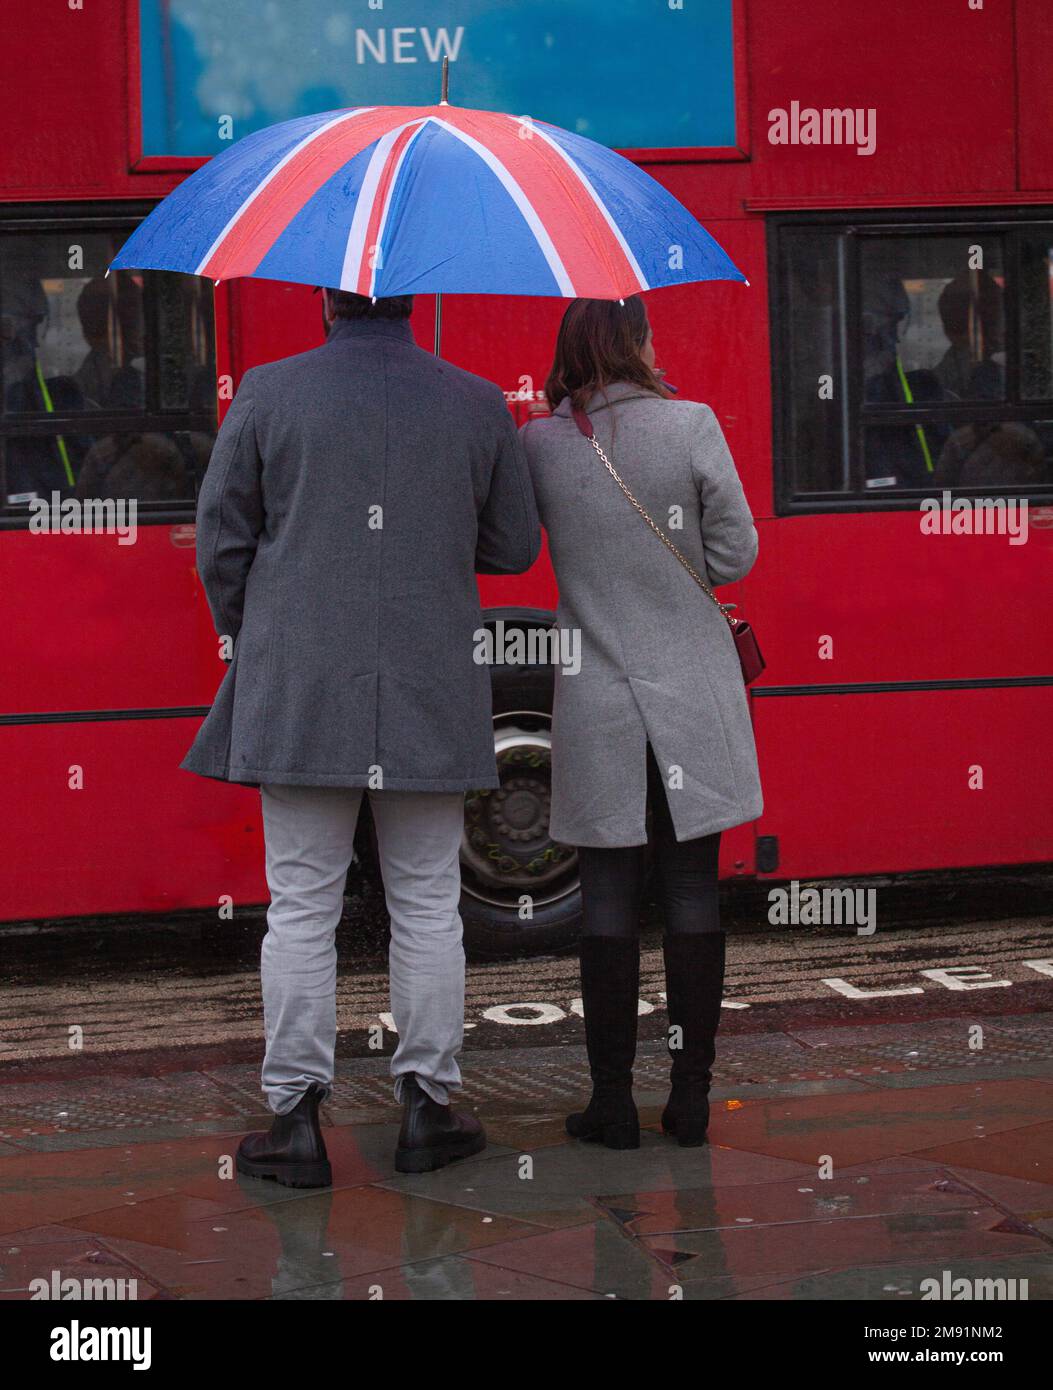 Vue arrière d'un jeune couple bien habillé avec un parapluie drapeau britannique qui s'est évanoui devant un bus londonien rouge à impériale. Londres, Angleterre - 31 décembre, Banque D'Images